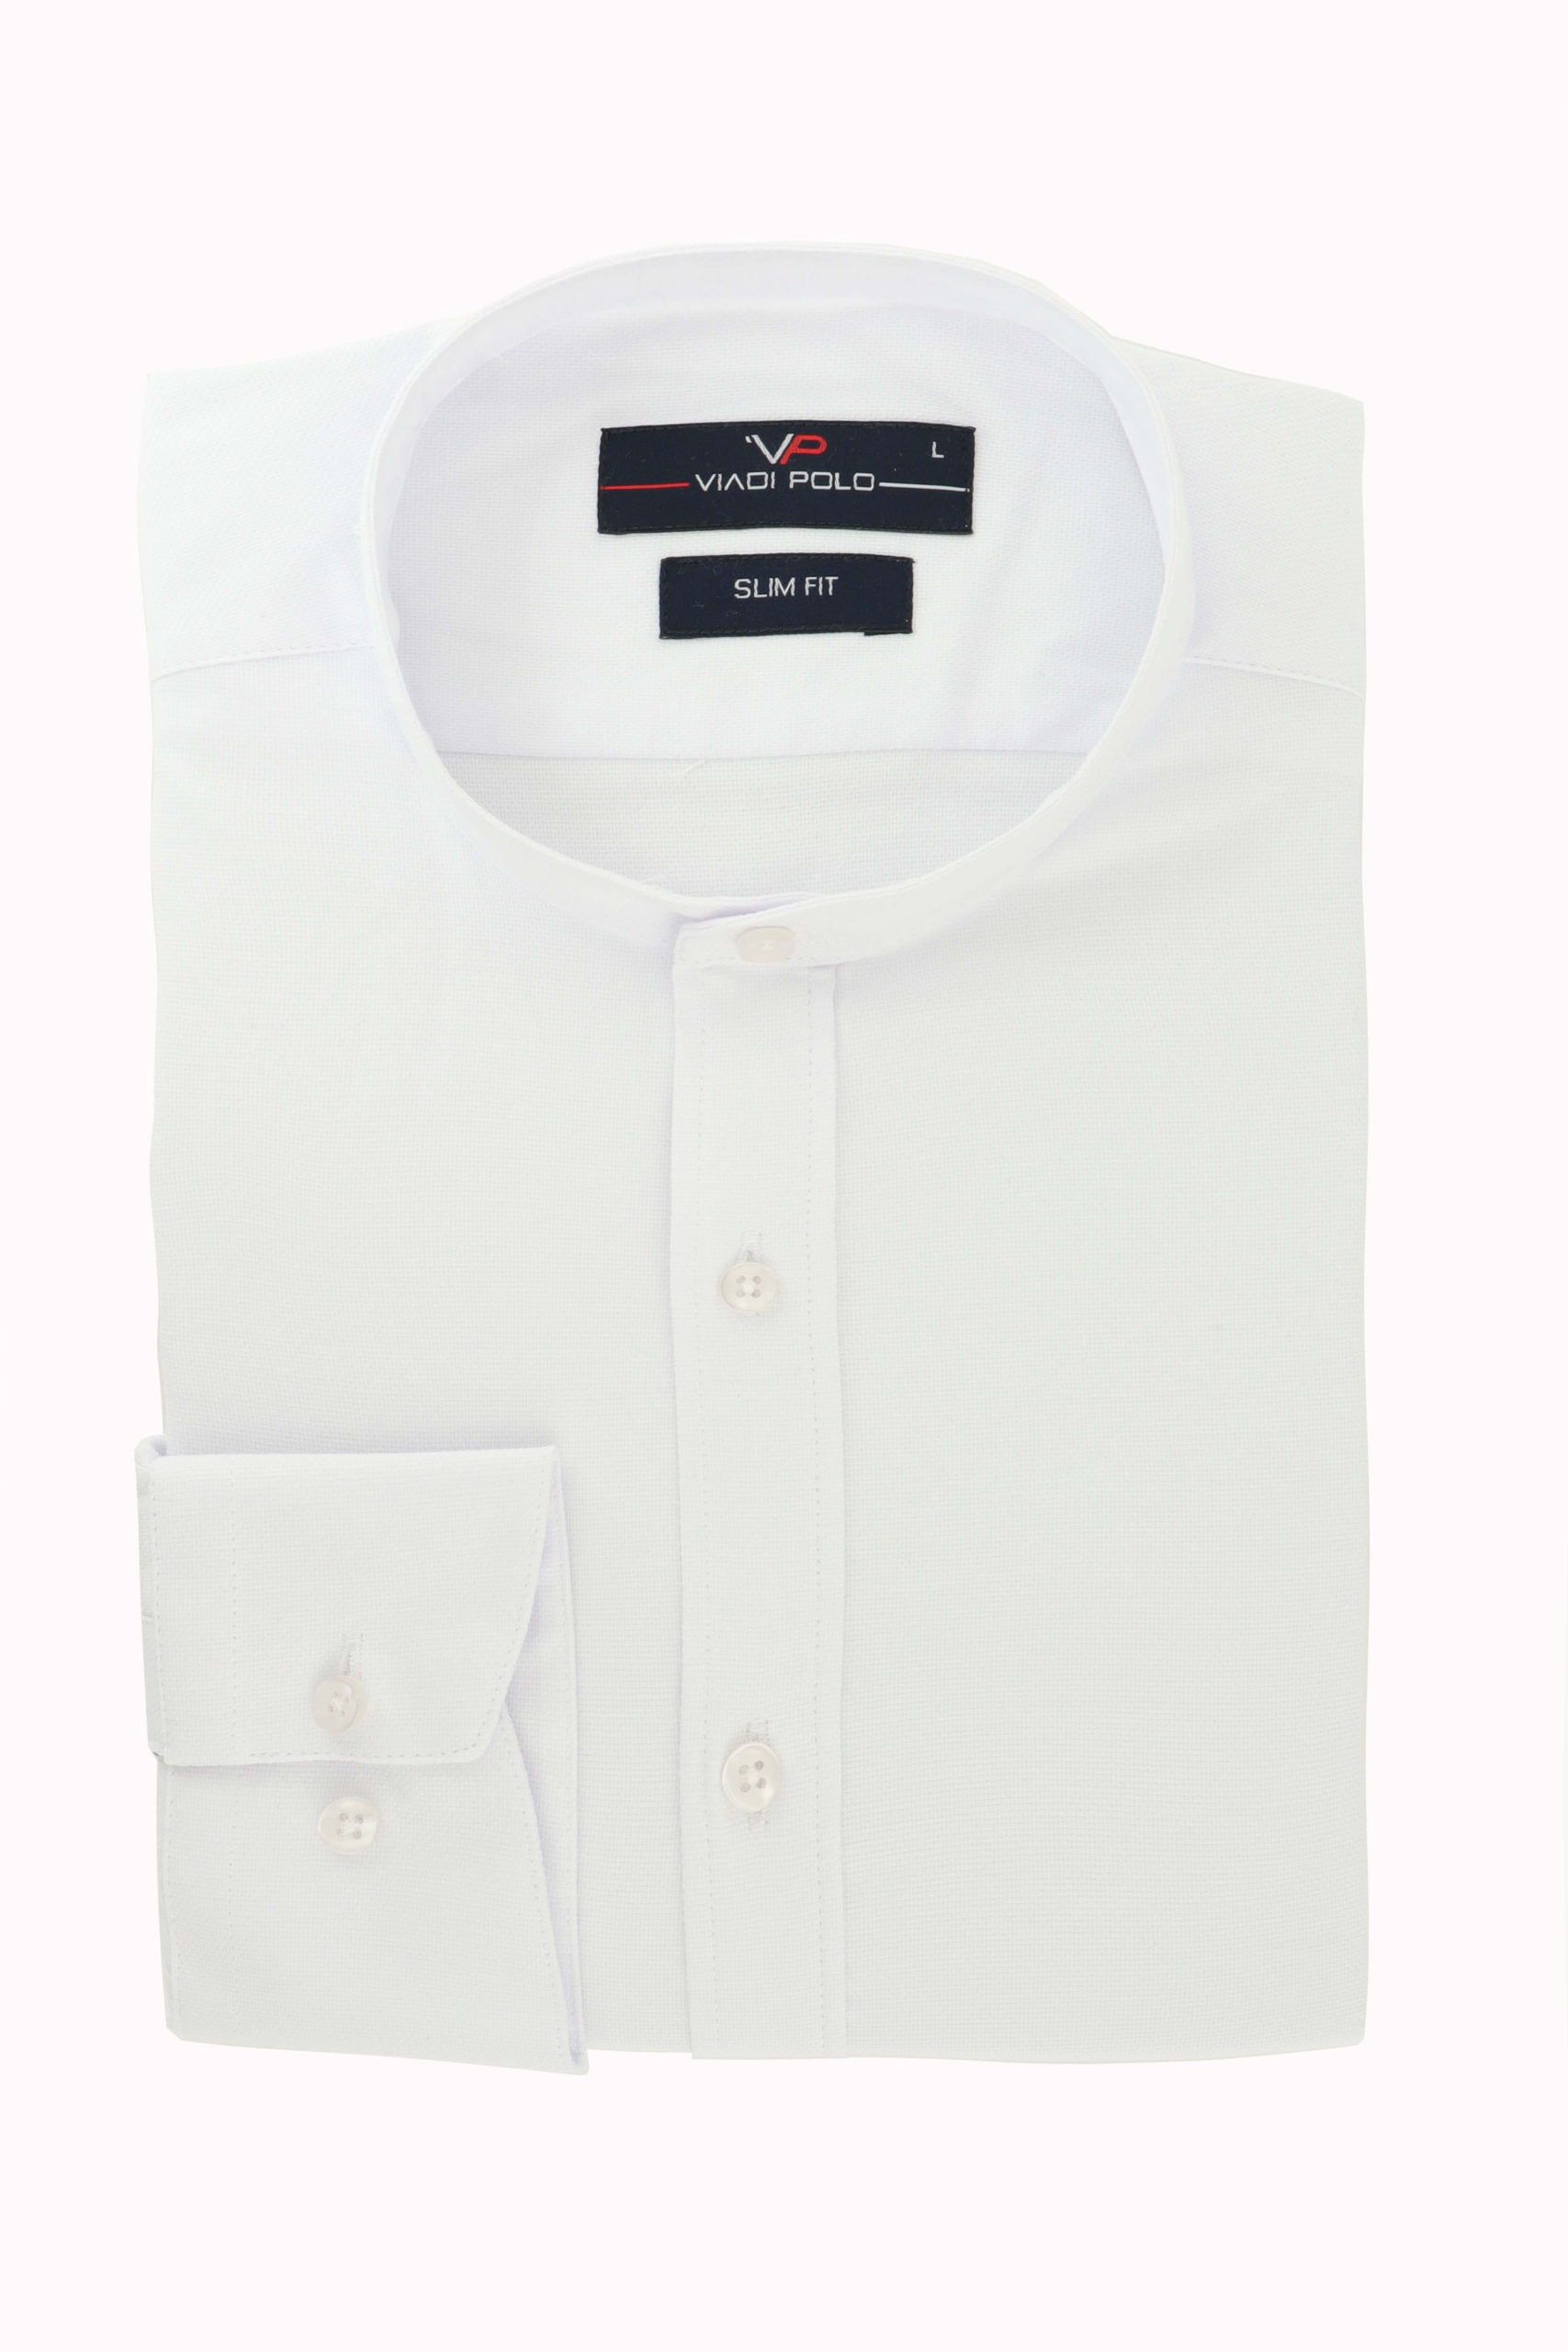 Koszula Biała ze Stójką Struktura Slim